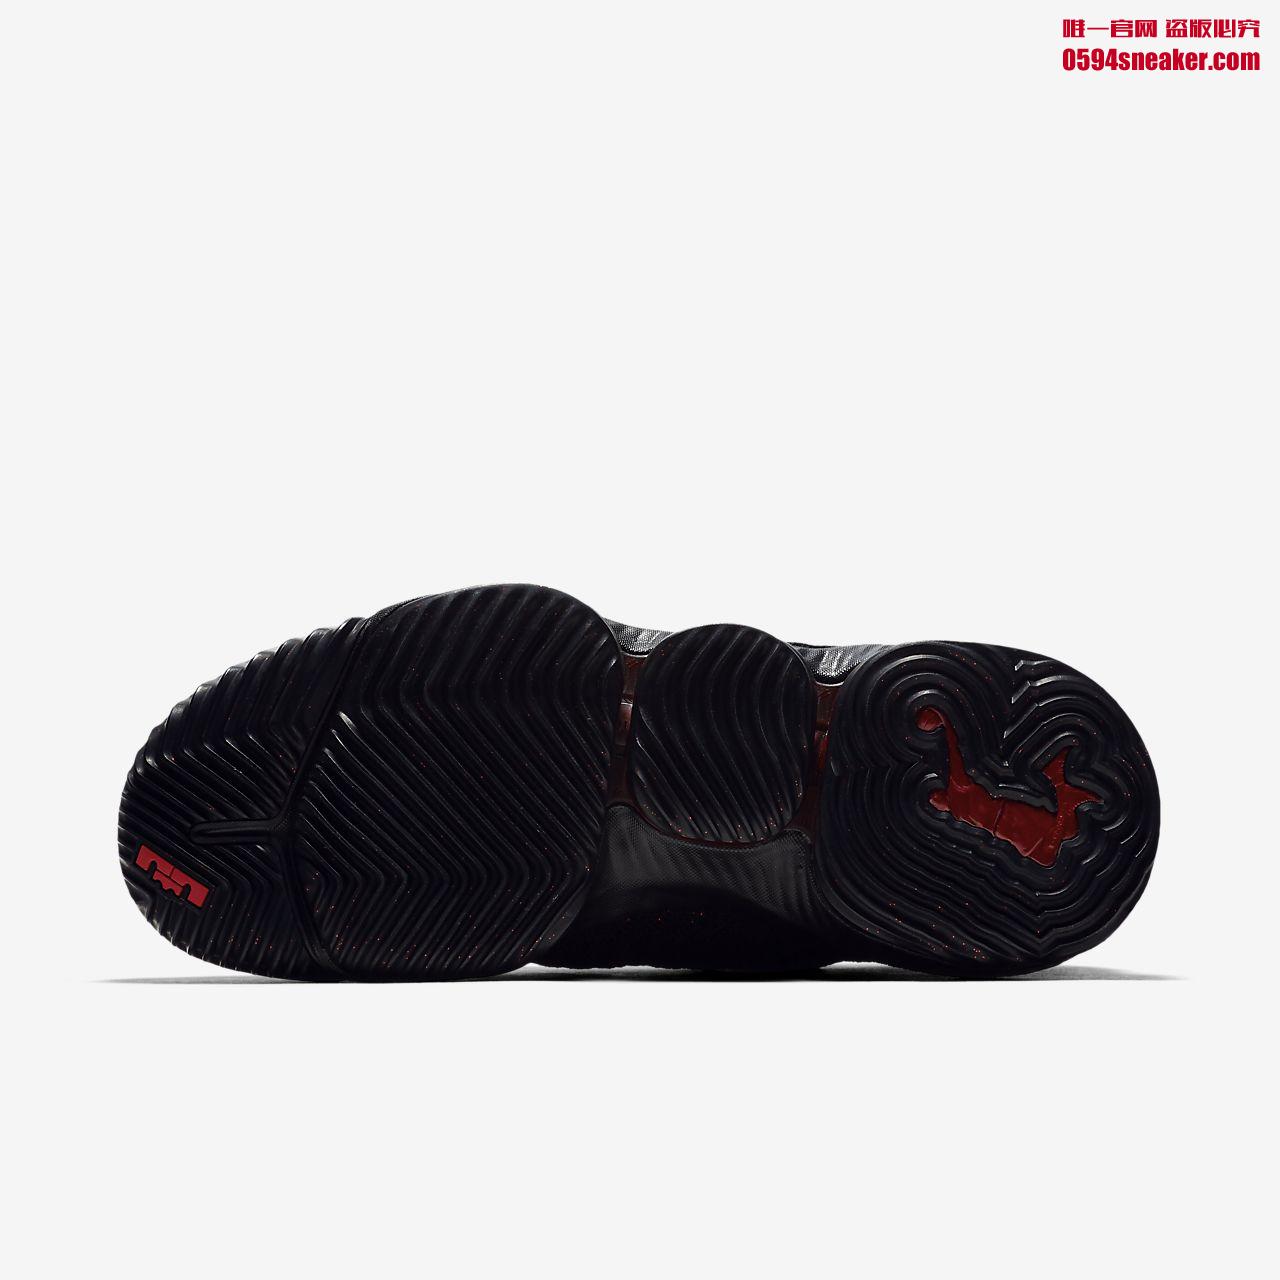 Nike LeBron 16 “Fresh Bred” AO2588-002、“Oreo” AO2595-006